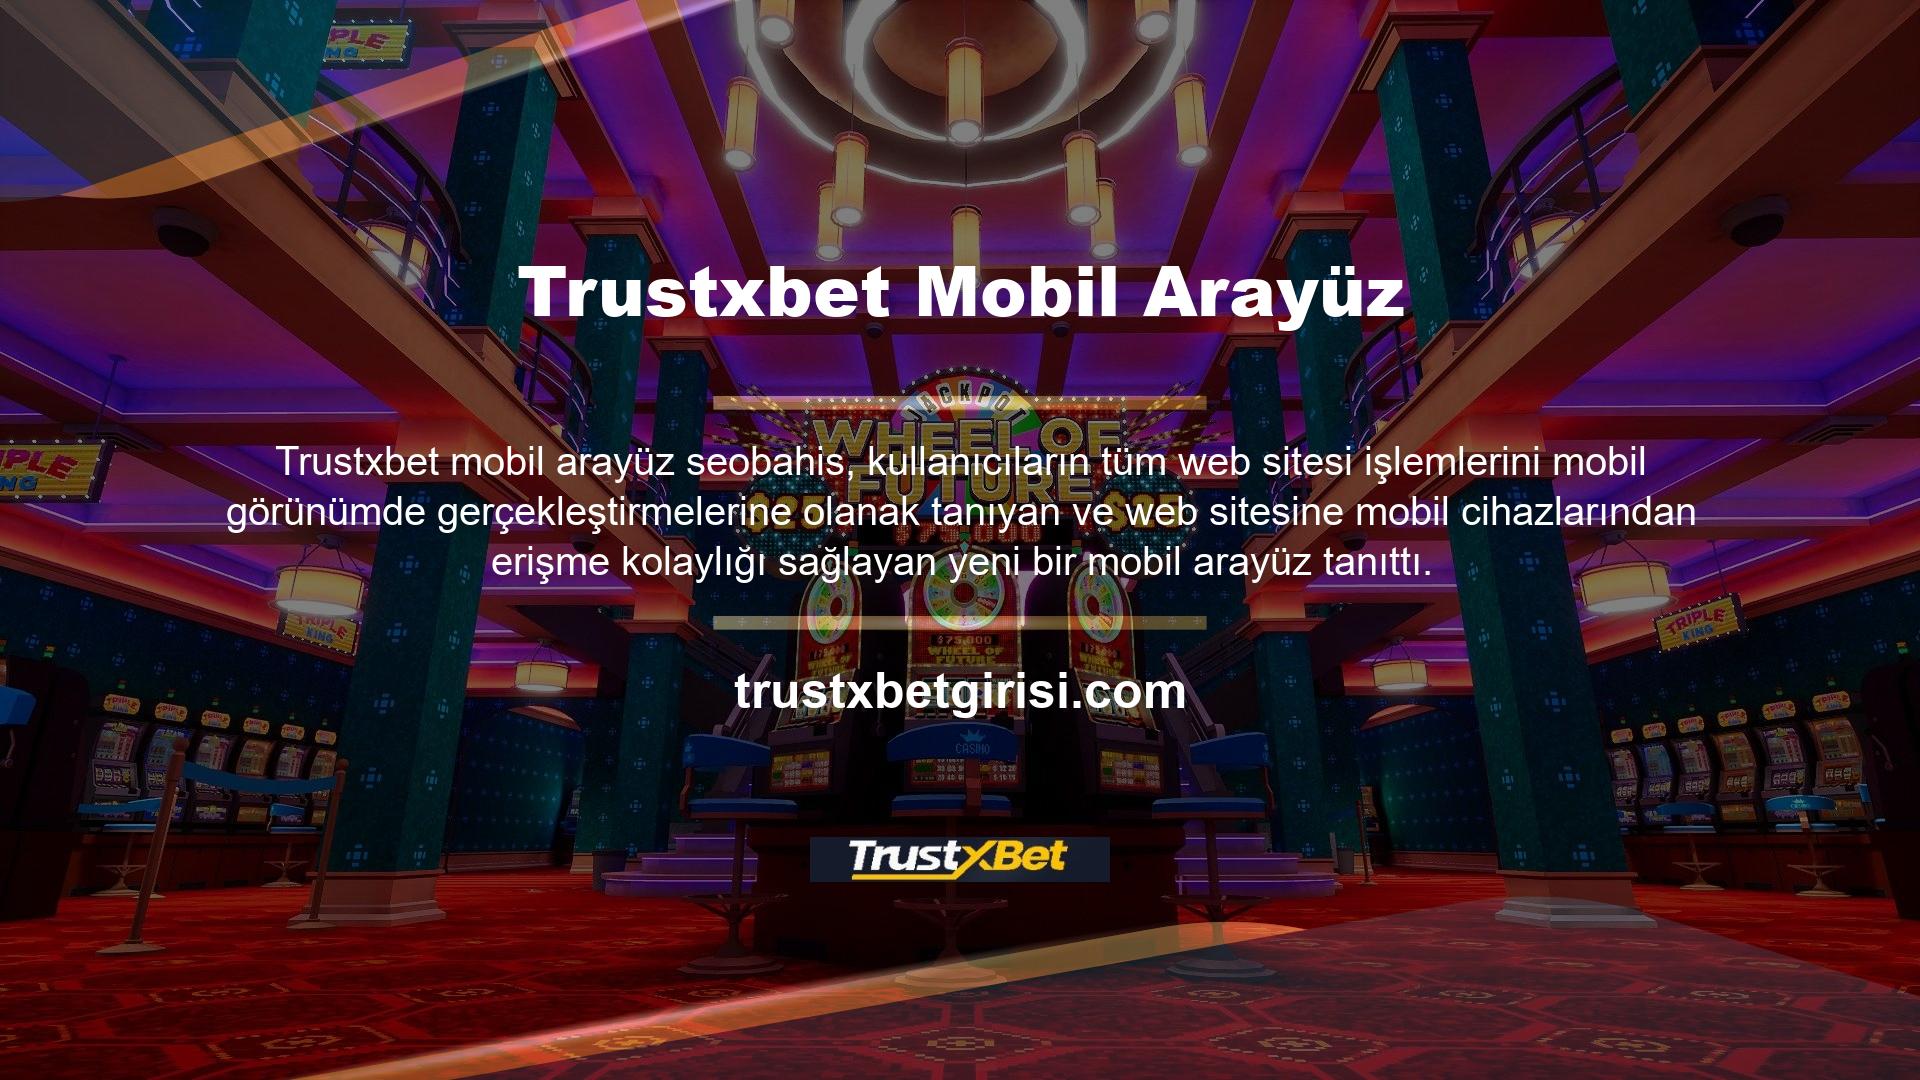 Trustxbet TV, tüm konularda güvenli ve farklı bir canlı yayın sağlar